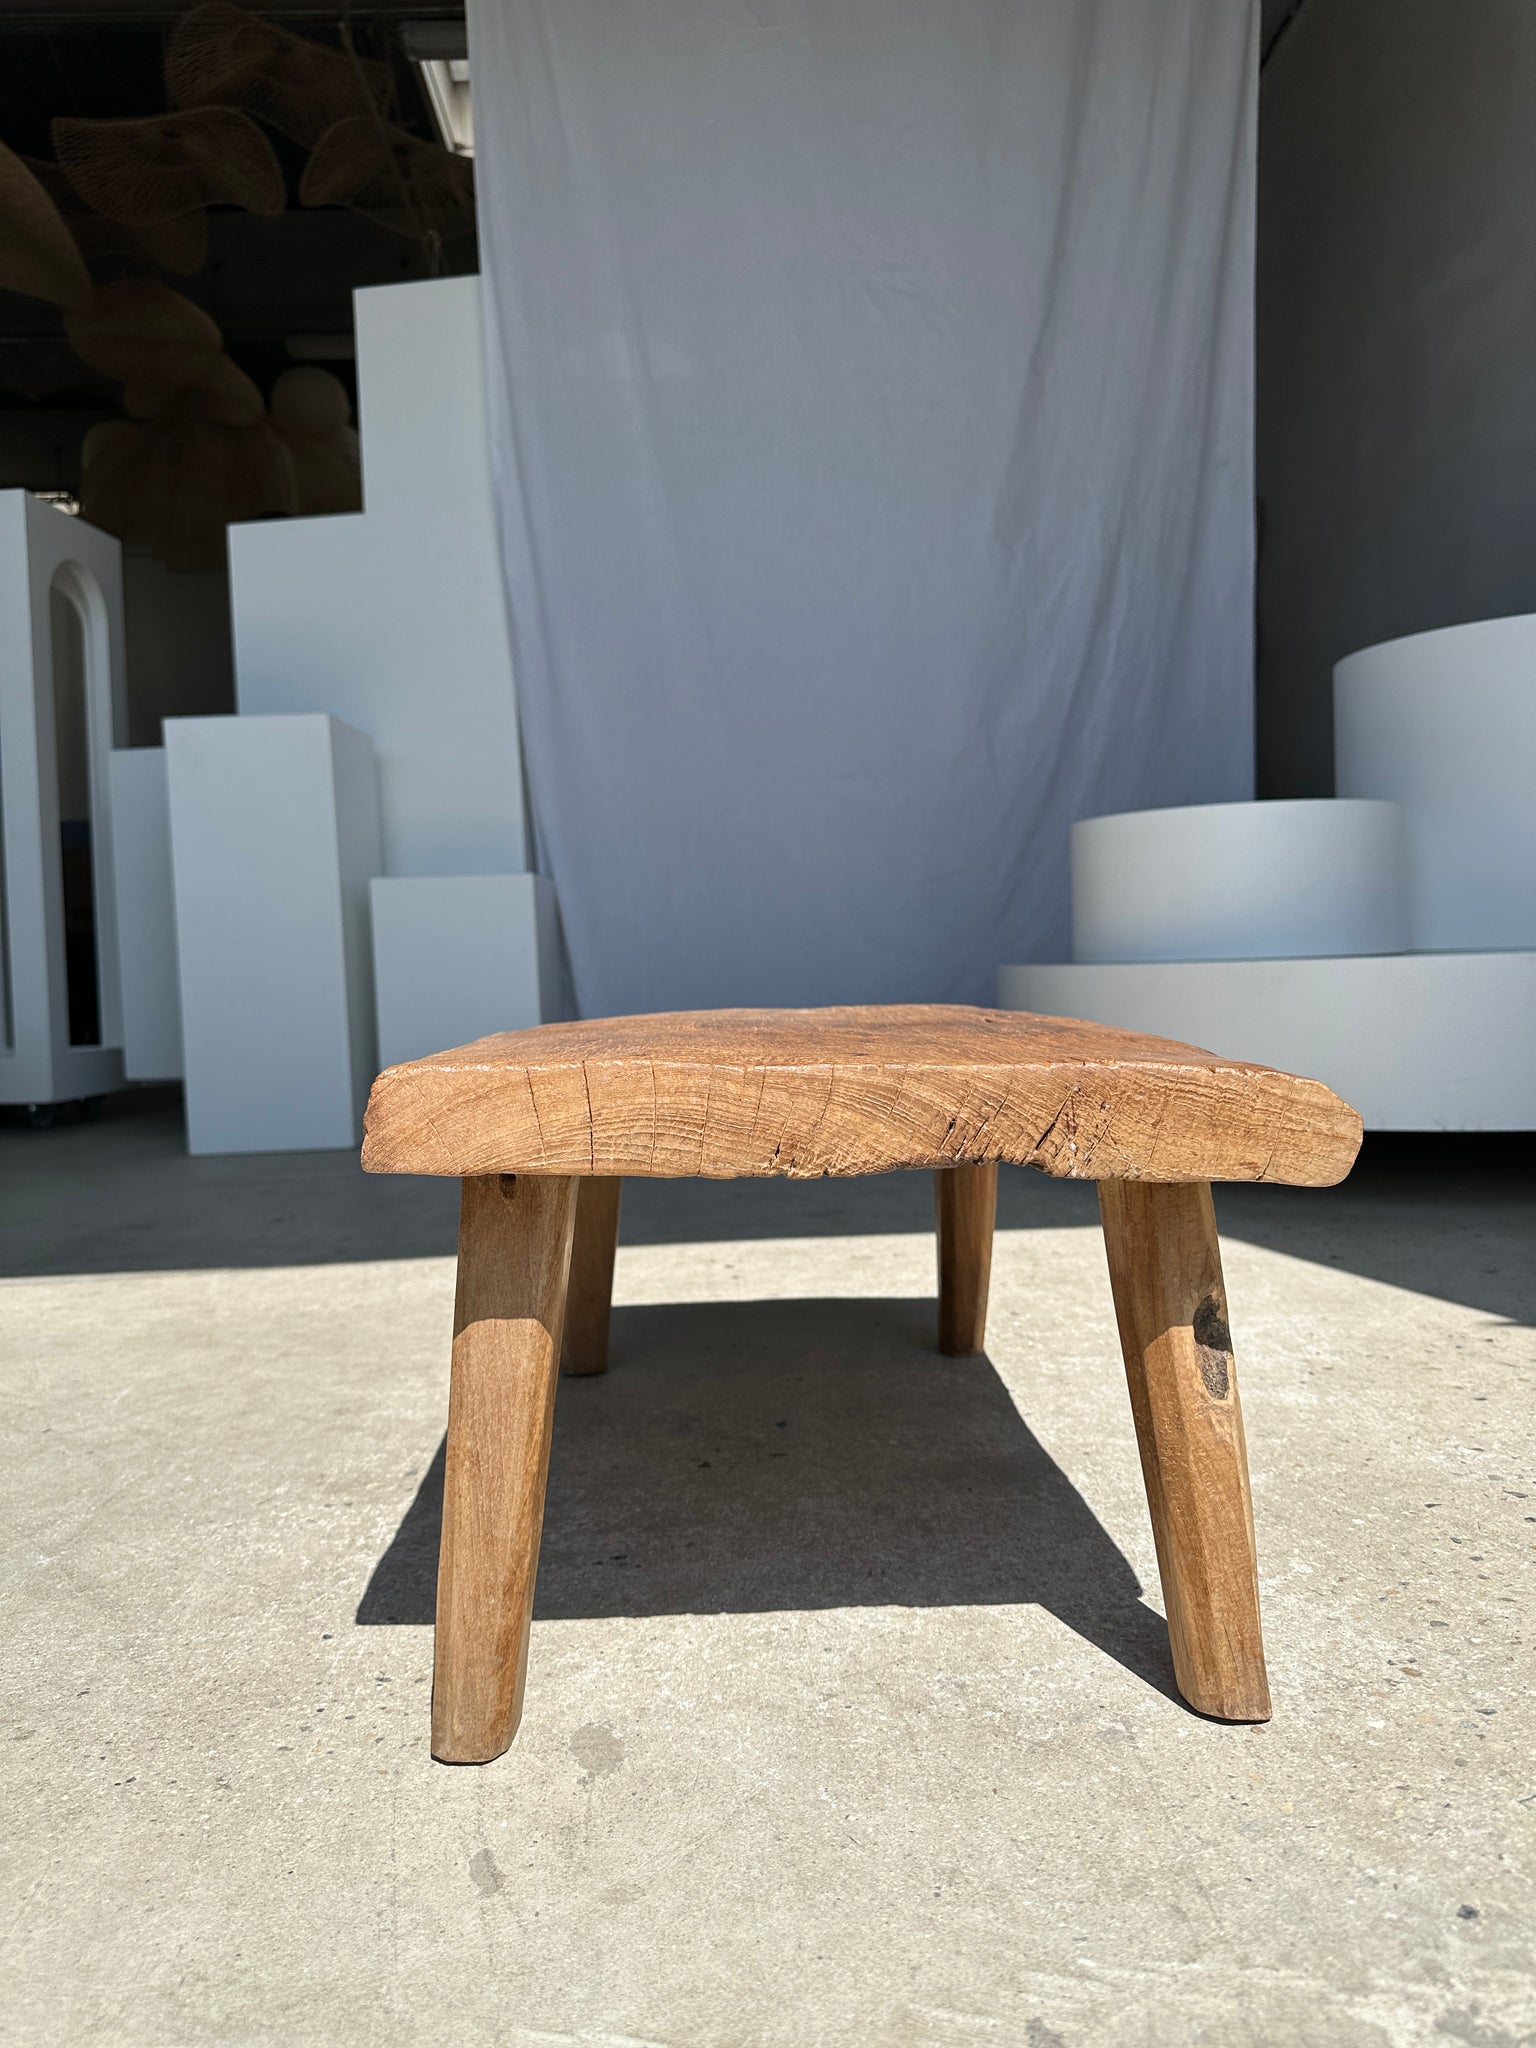 Petite table basse en teck blond quadripode H:30 L:63,5 l:40